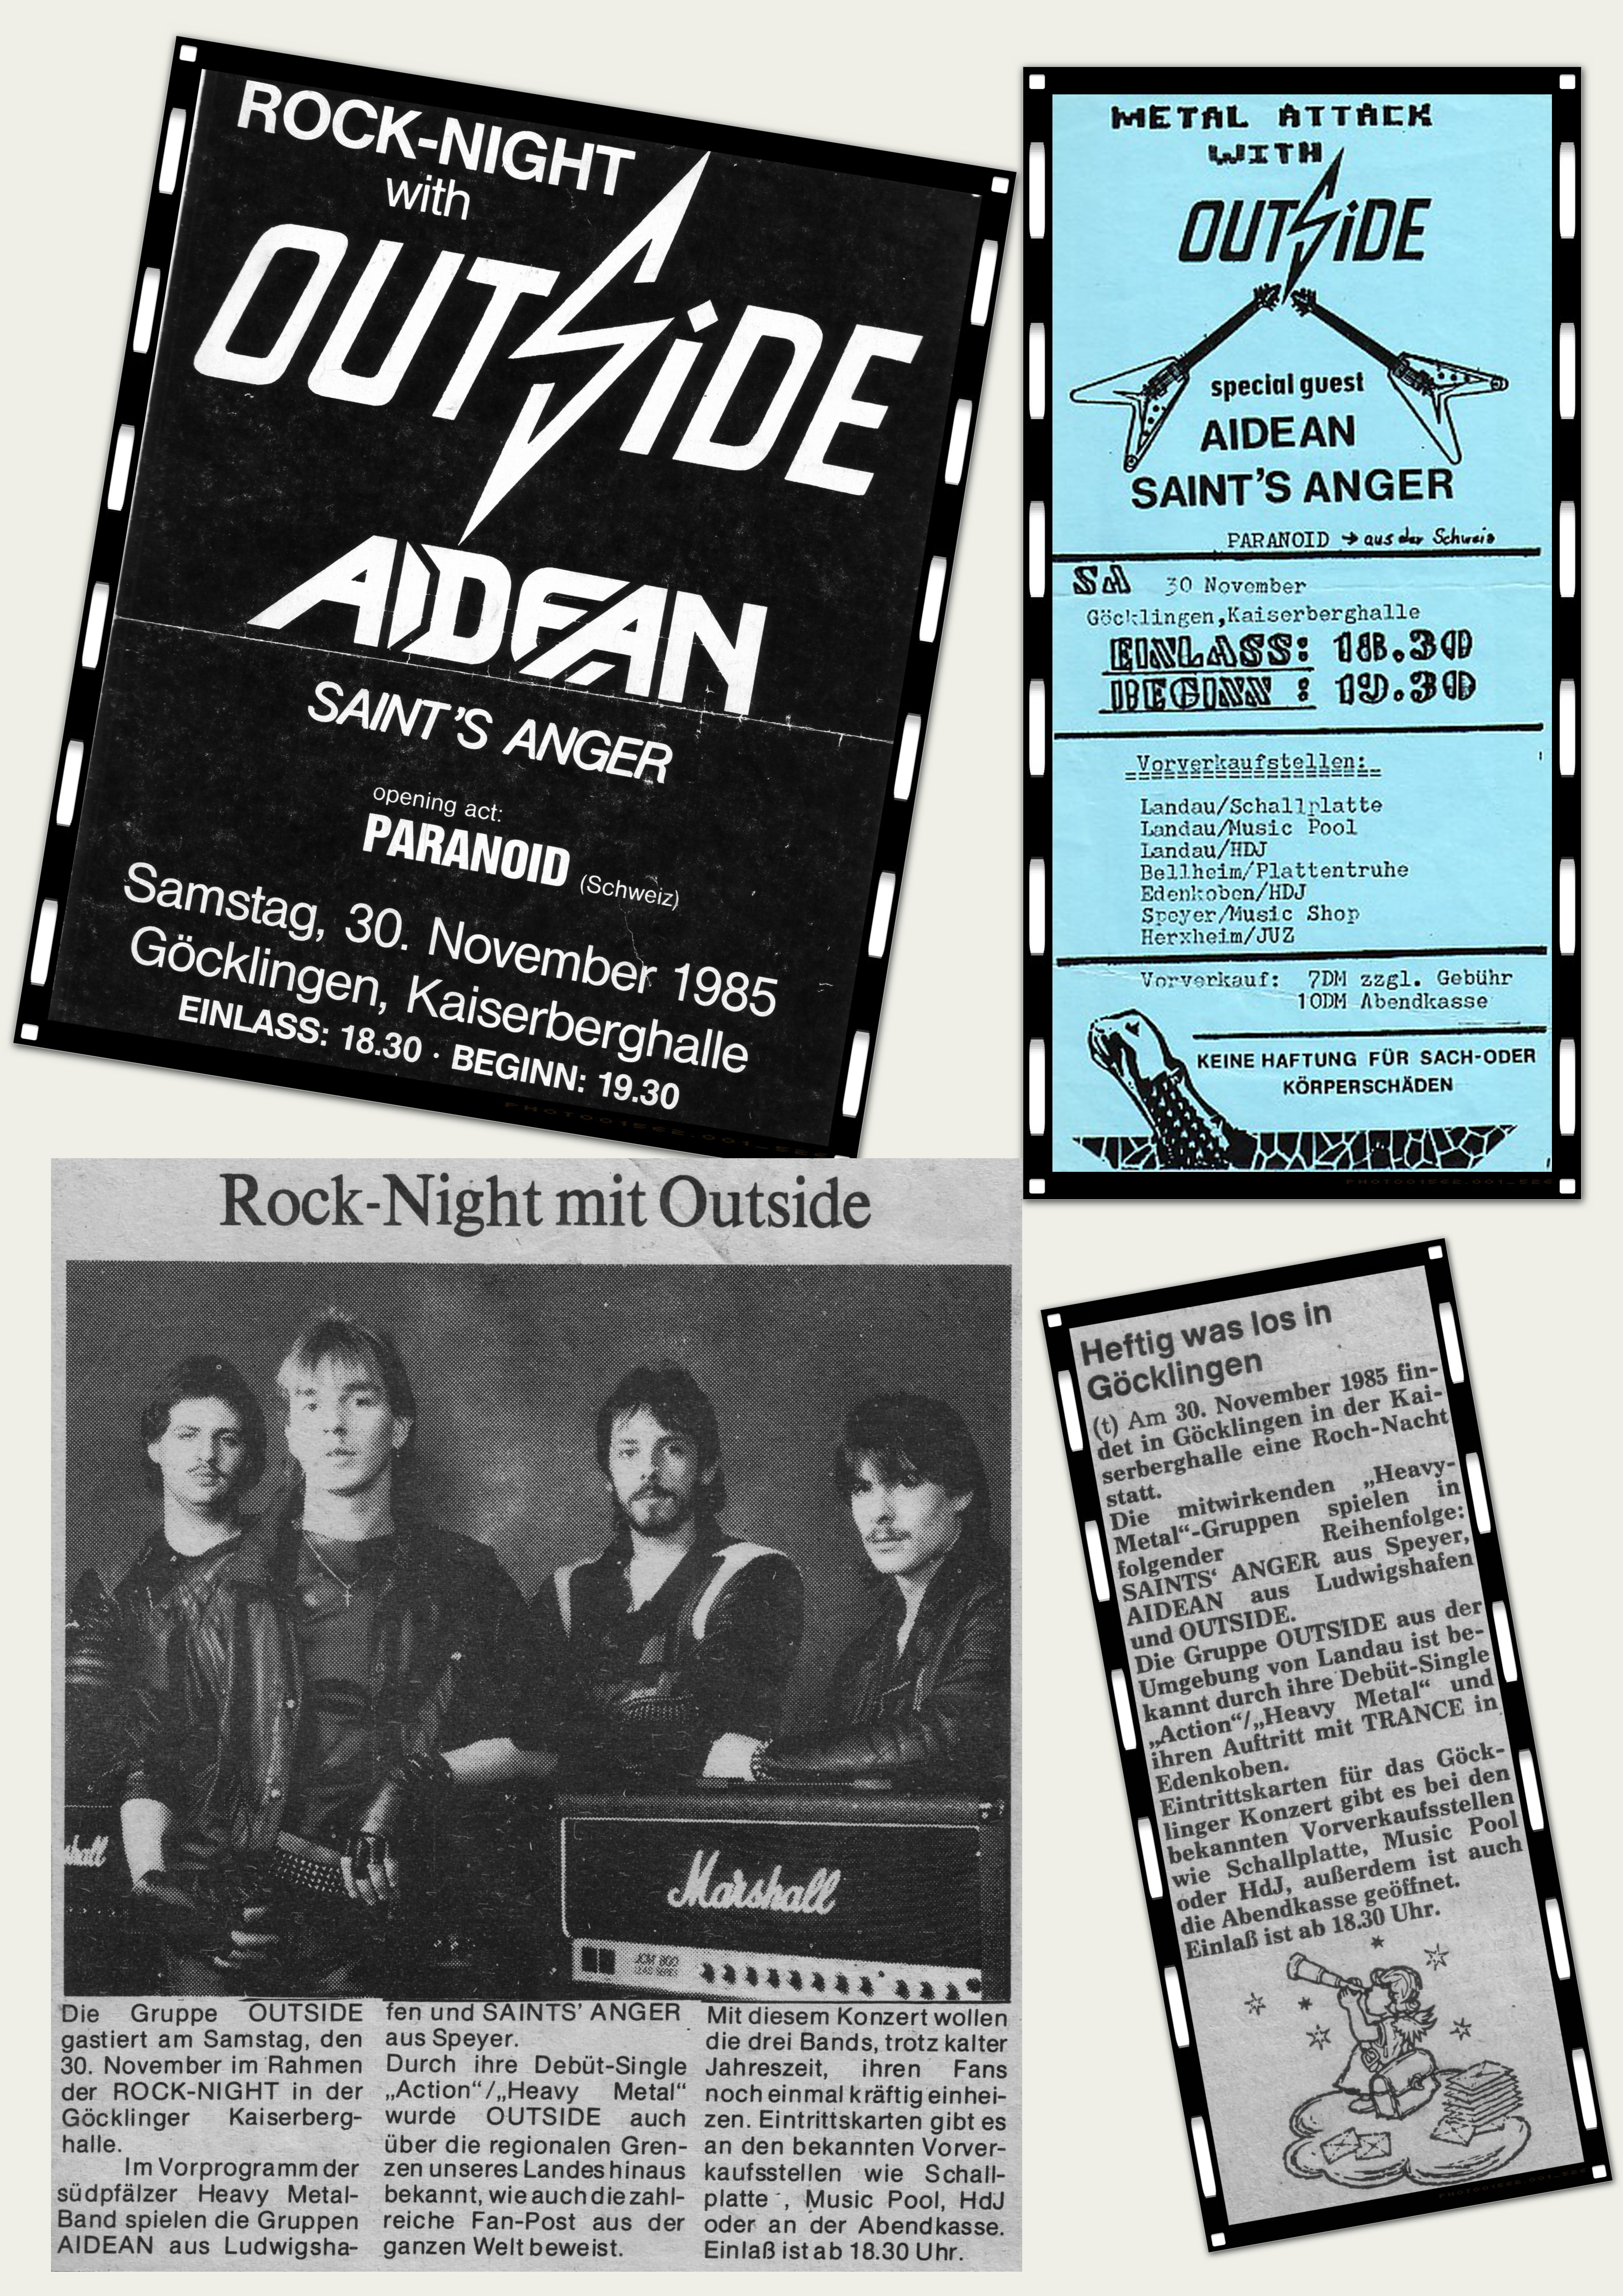 30.11.1985 - "Kaiserberghalle" Göcklingen